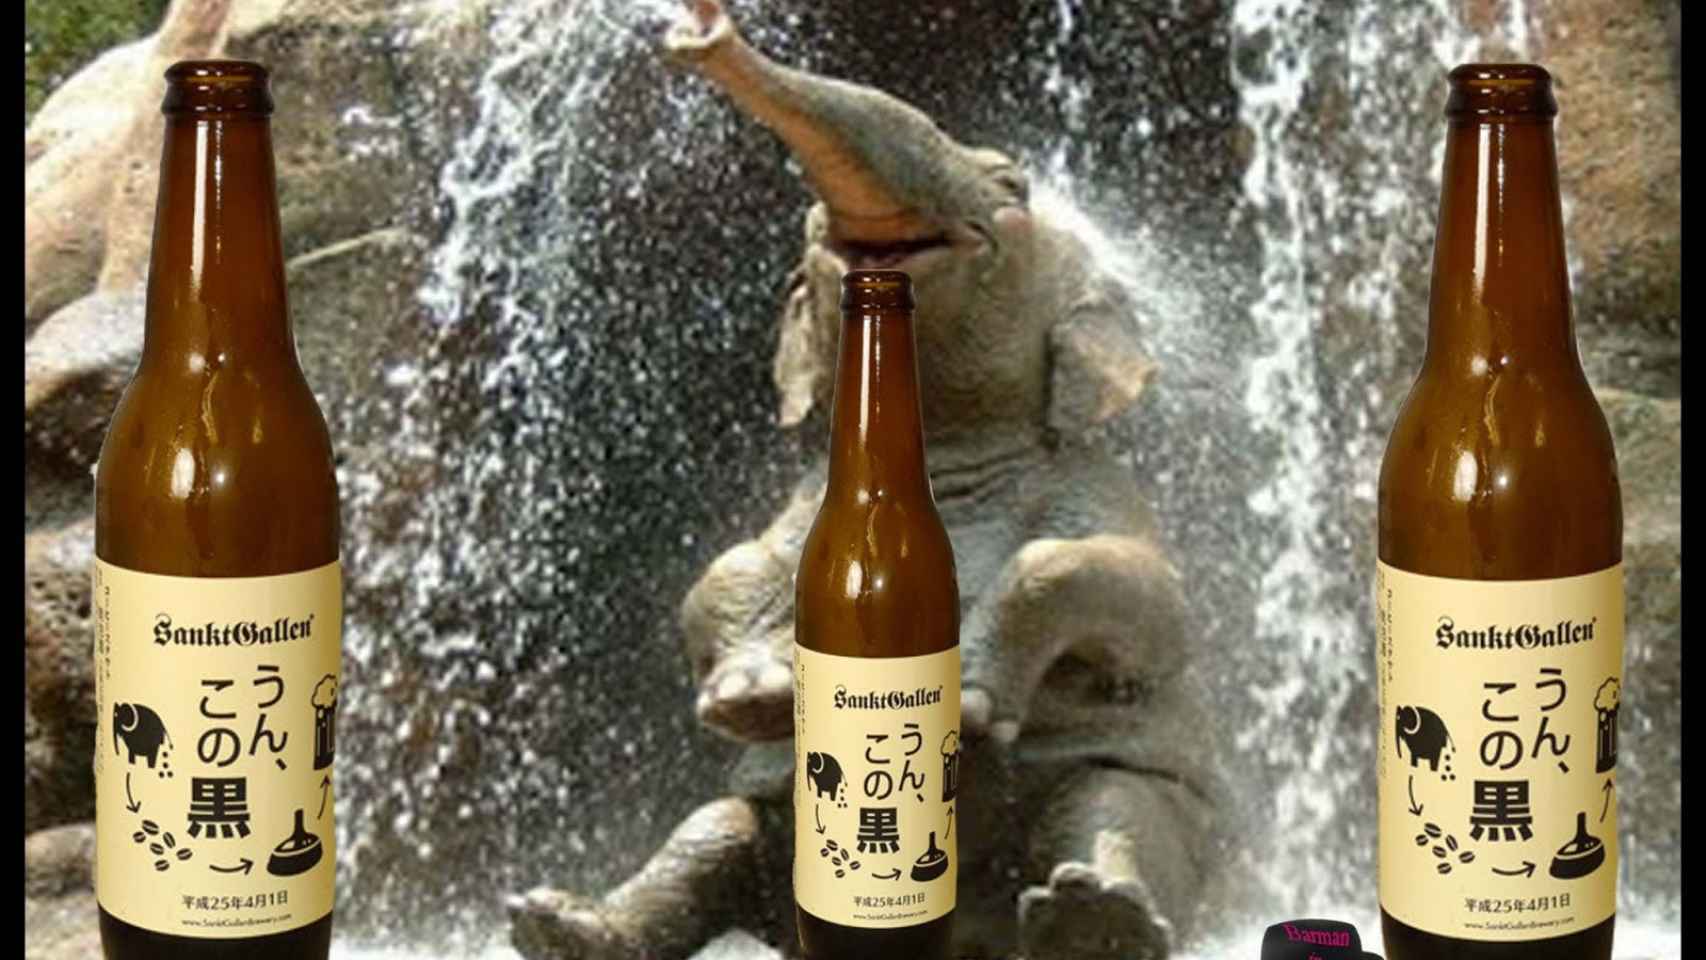 La cerveza elaborada con granos de café en caca de elefante.